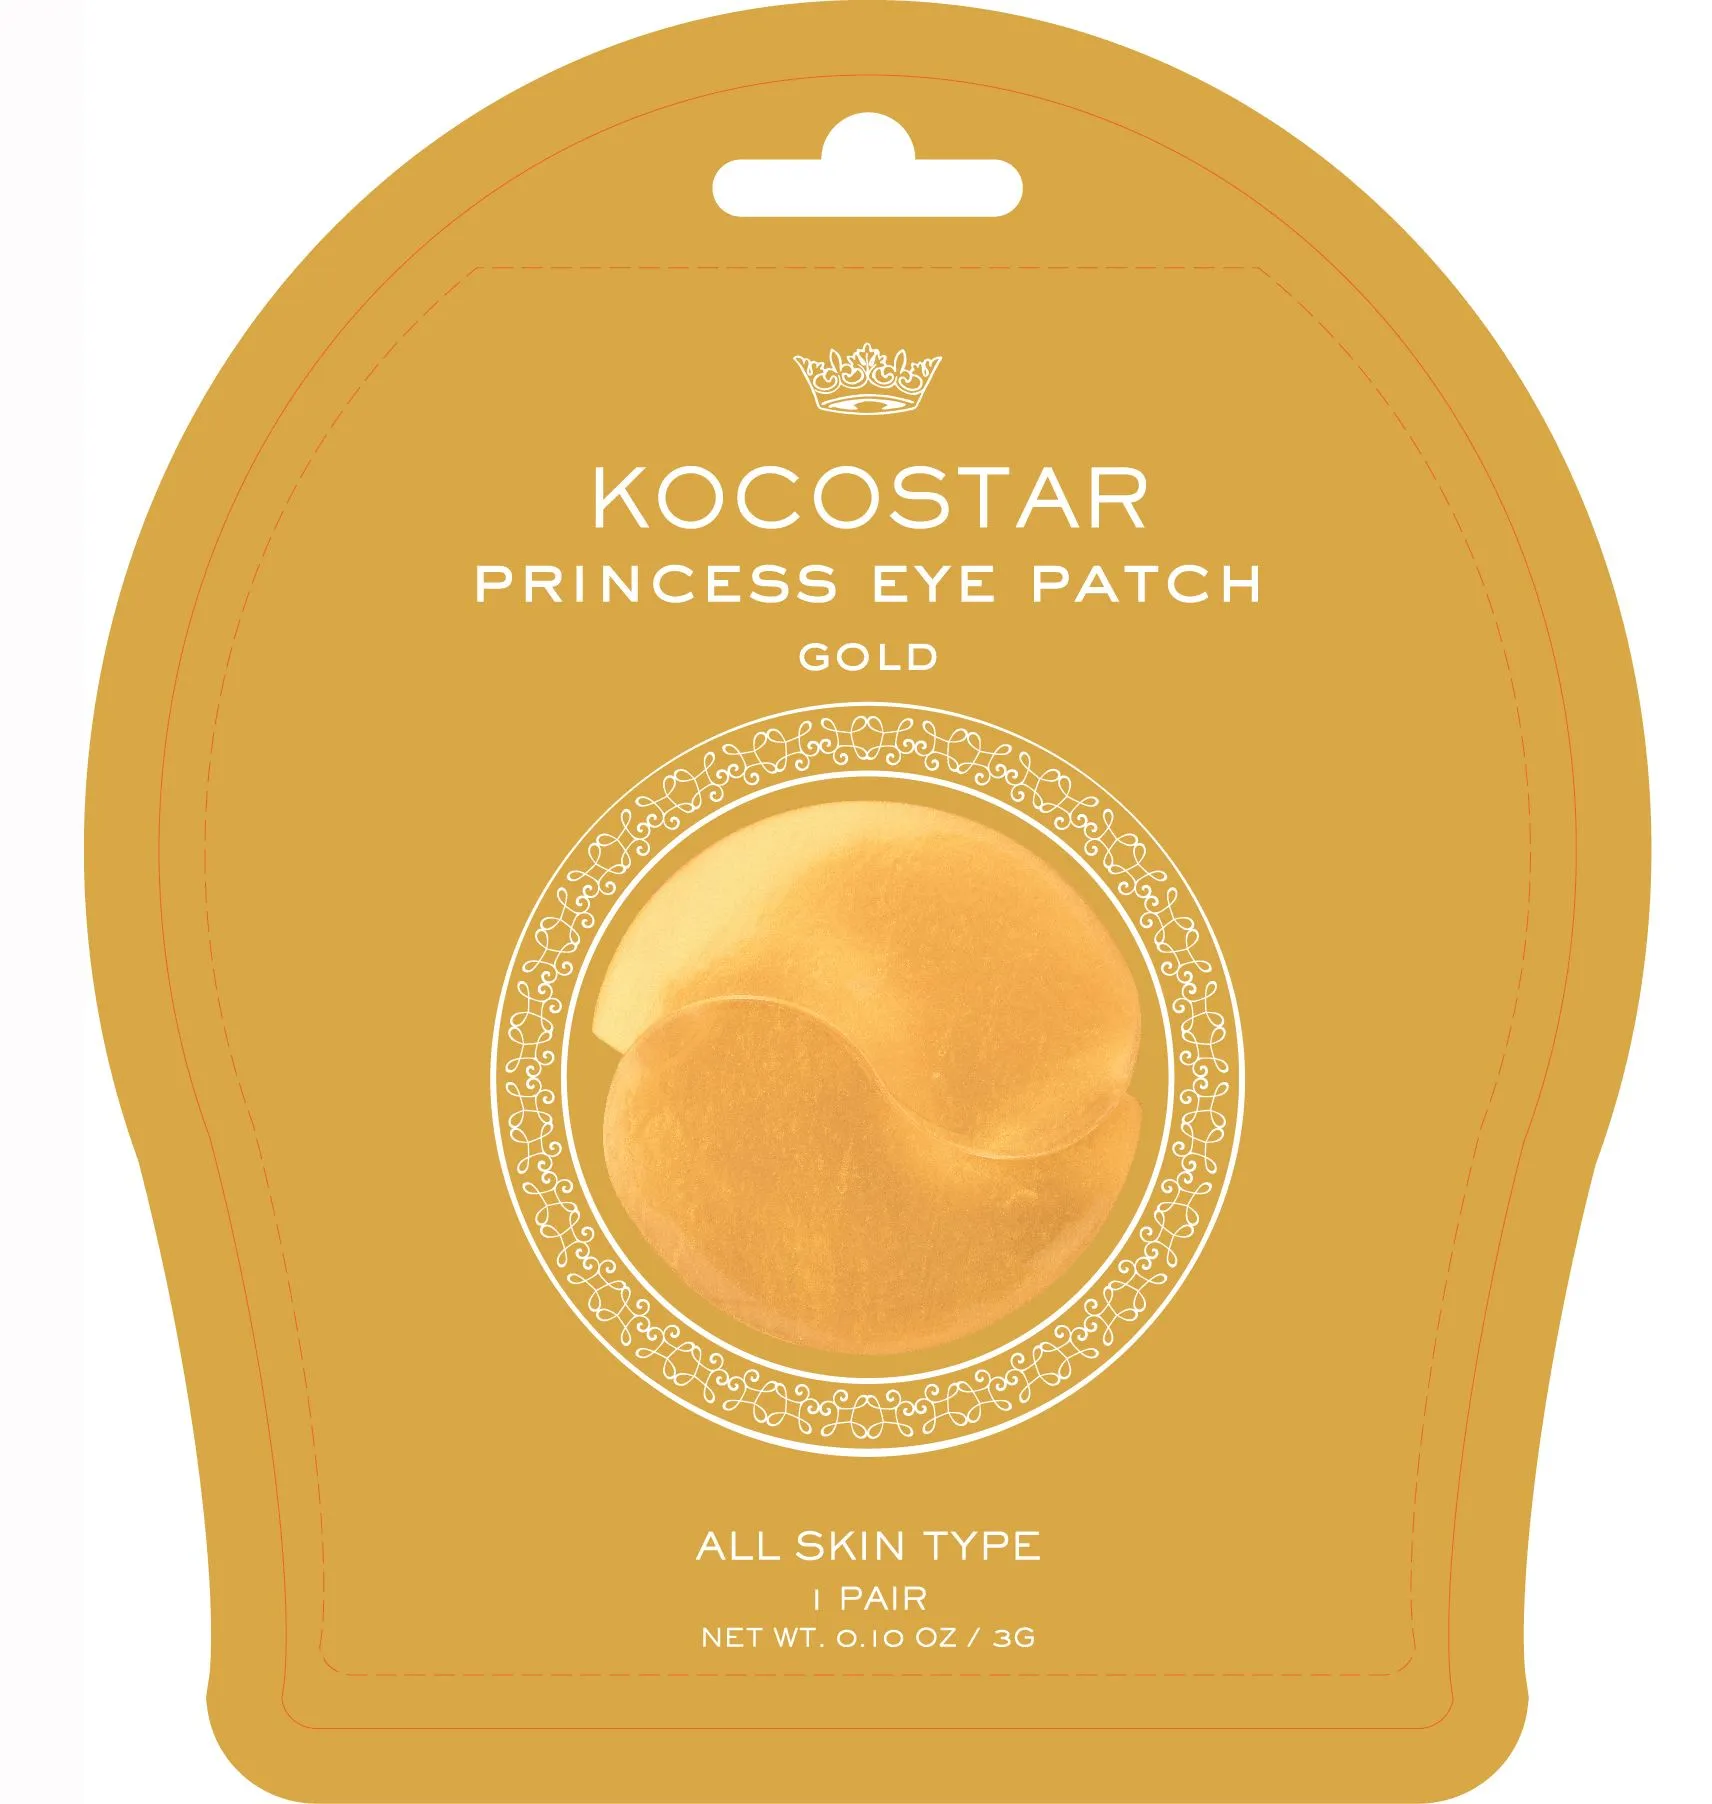 Kocostar Princess Eye Patch Gold 3 g / 2 pcs